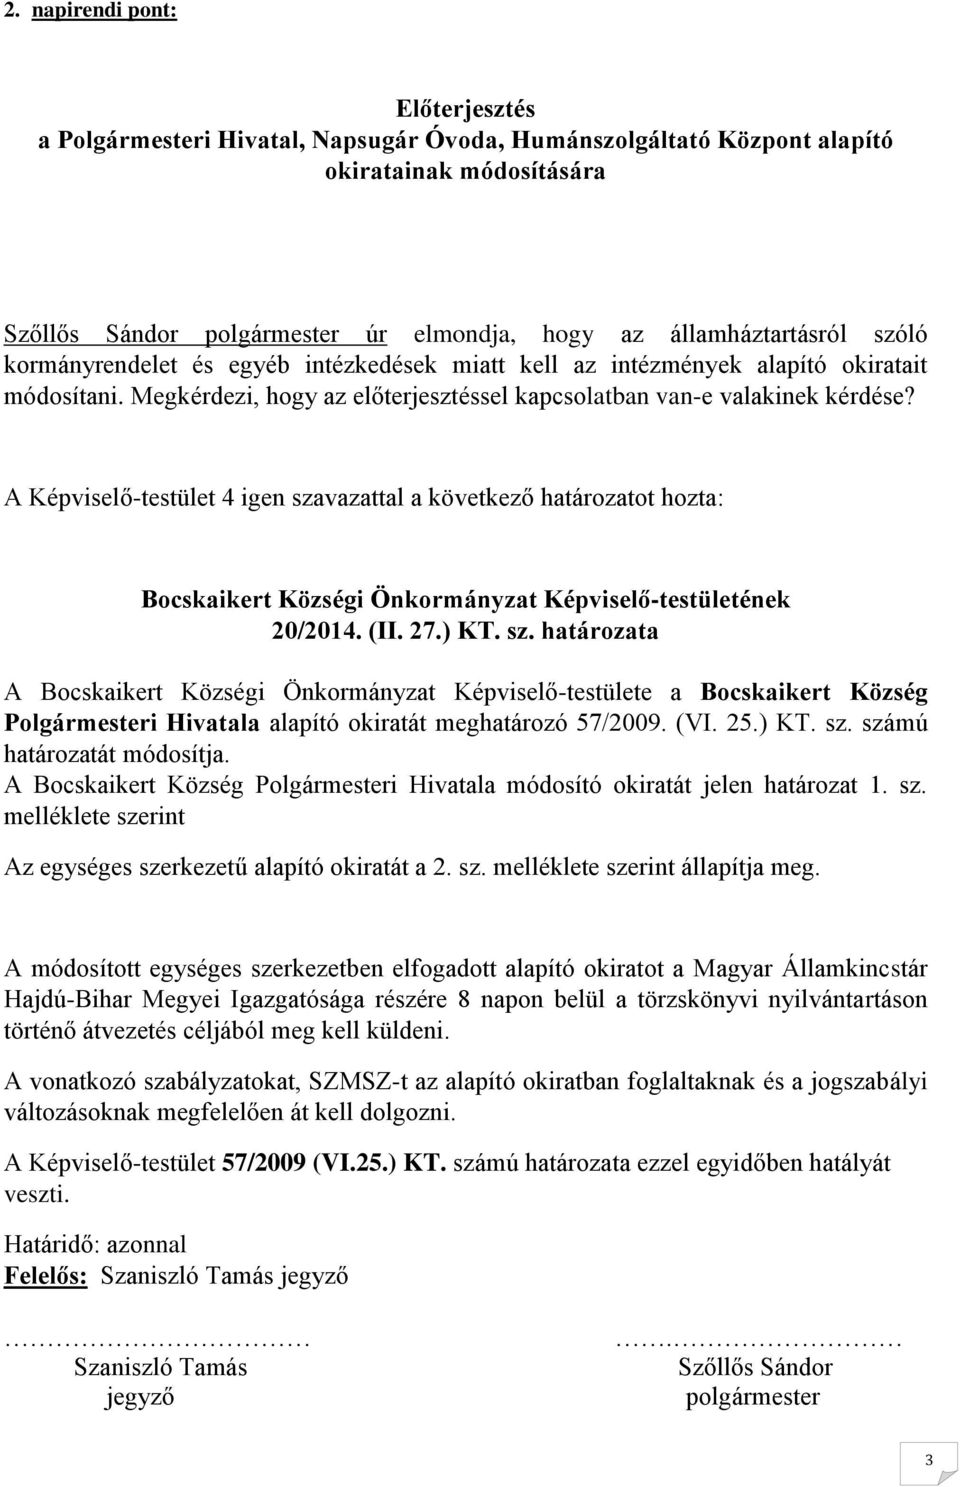 A Képviselő-testület 4 igen szavazattal a következő határozatot hozta: Bocskaikert Községi Önkormányzat Képviselő-testületének 20/2014. (II. 27.) KT. sz. határozata A Bocskaikert Községi Önkormányzat Képviselő-testülete a Bocskaikert Község Polgármesteri Hivatala alapító okiratát meghatározó 57/2009.